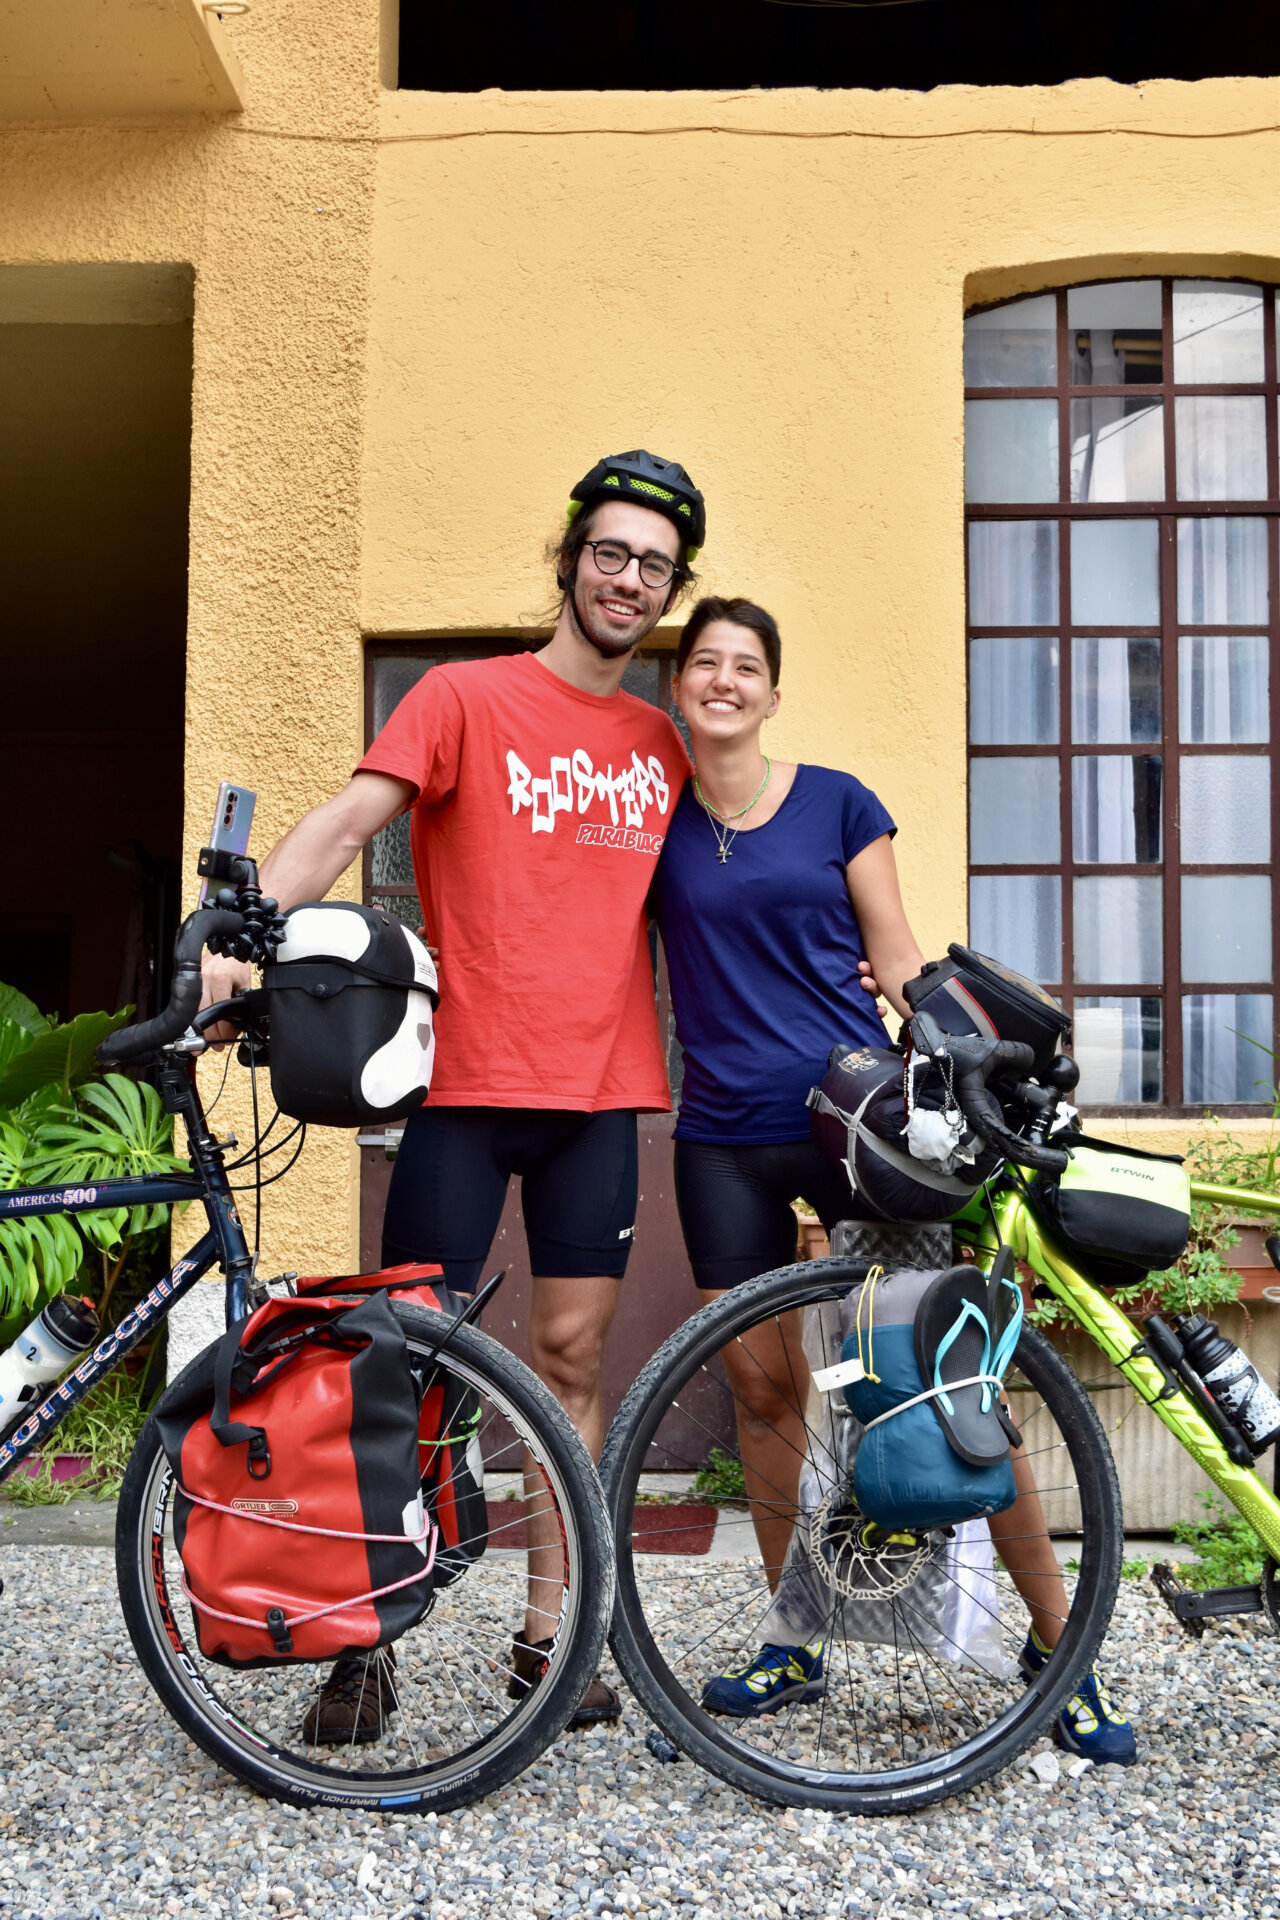 Parabiago in bici fino alle Filippine per solidarietà Alessio Chiodero